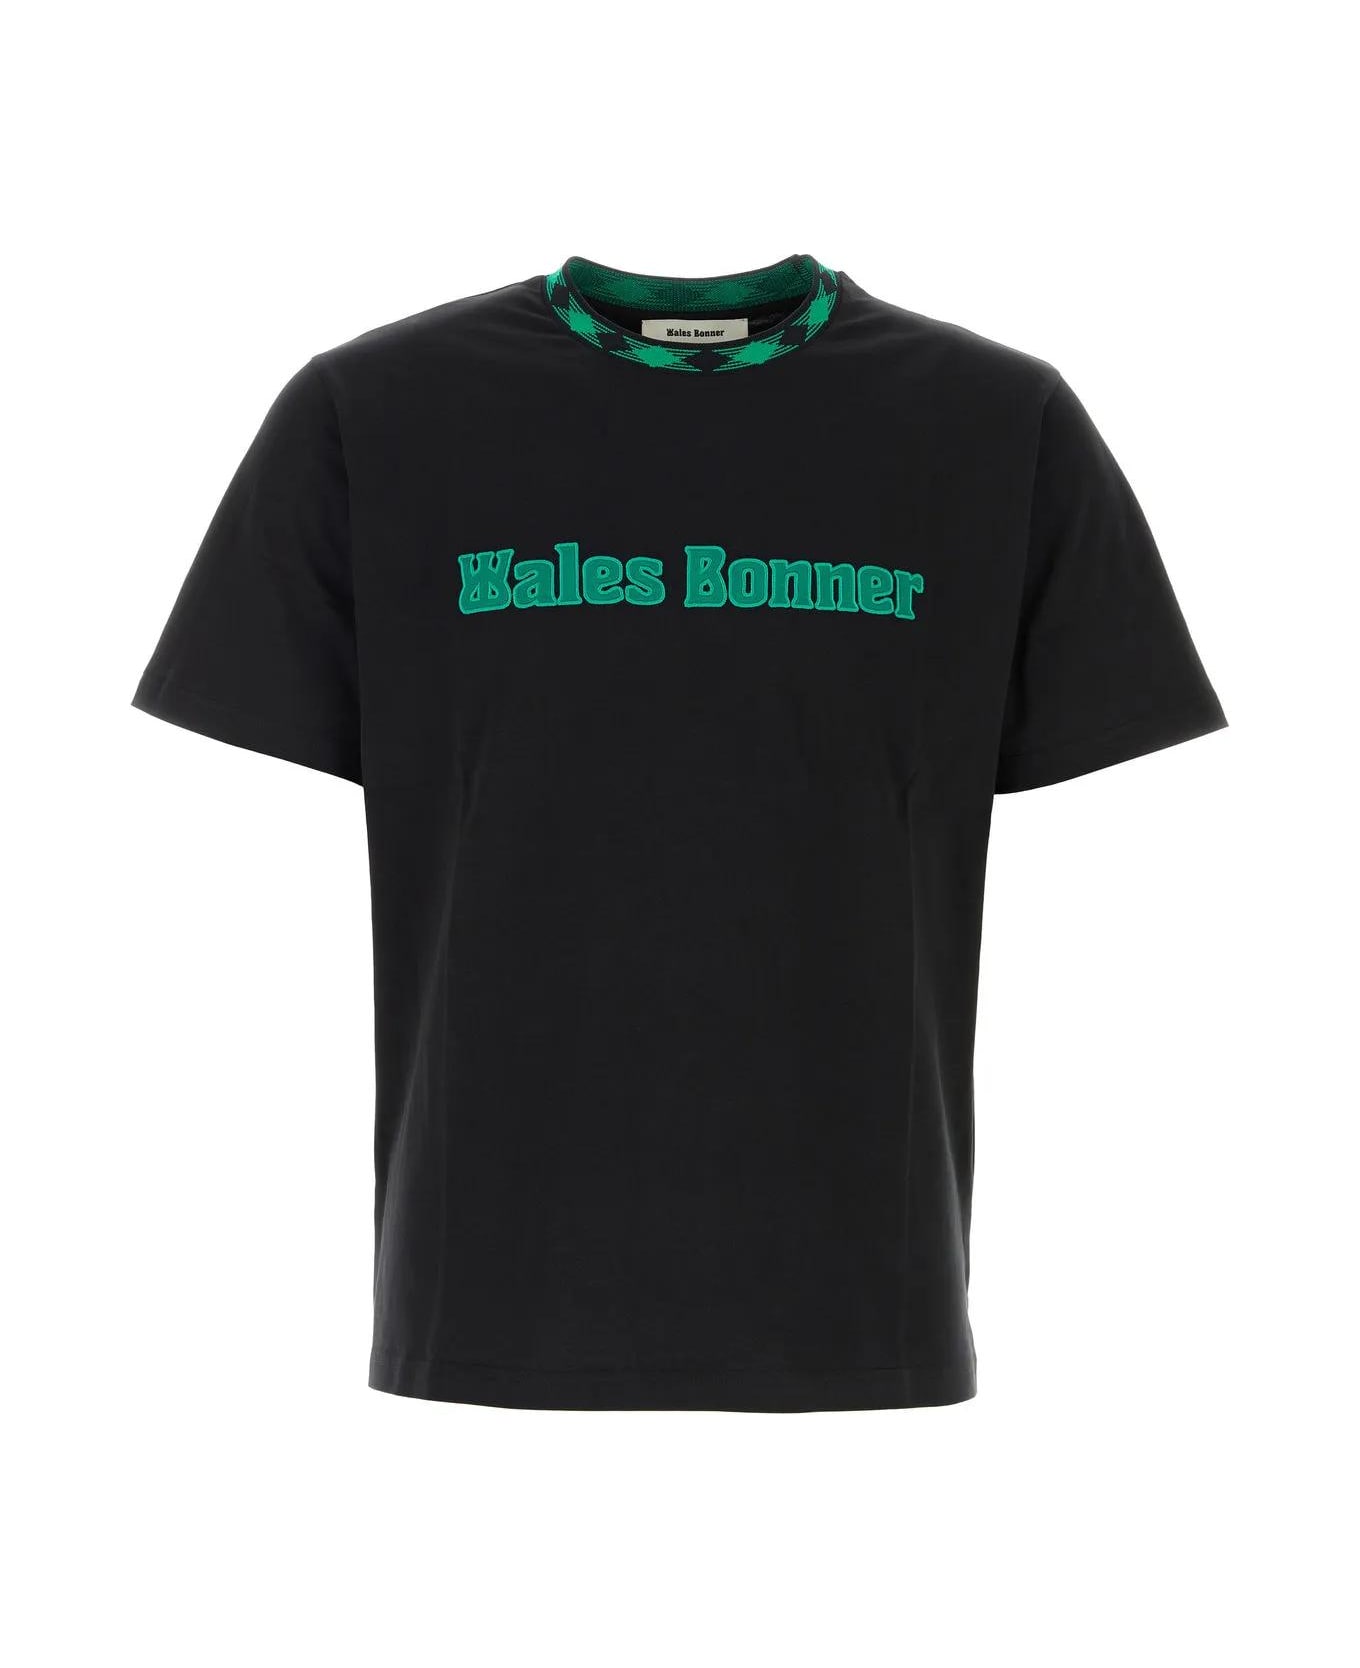 Wales Bonner Black Cotton Original T-shirt - Black